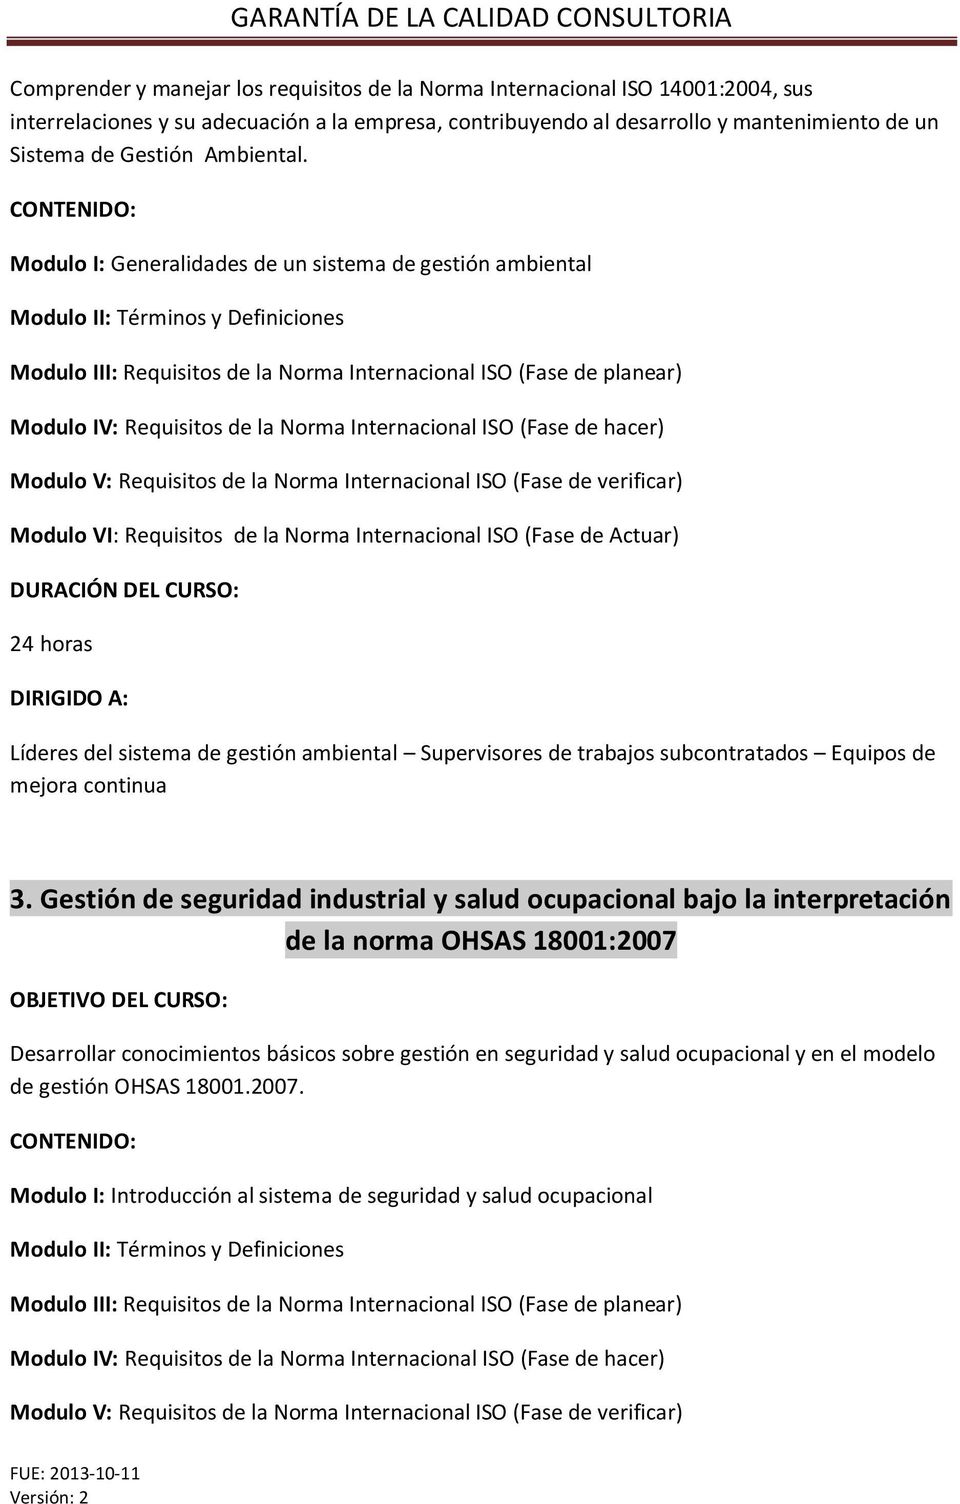 Modulo I: Generalidades de un sistema de gestión ambiental Modulo II: Términos y Definiciones Modulo III: Requisitos de la Norma Internacional ISO (Fase de planear) Modulo IV: Requisitos de la Norma